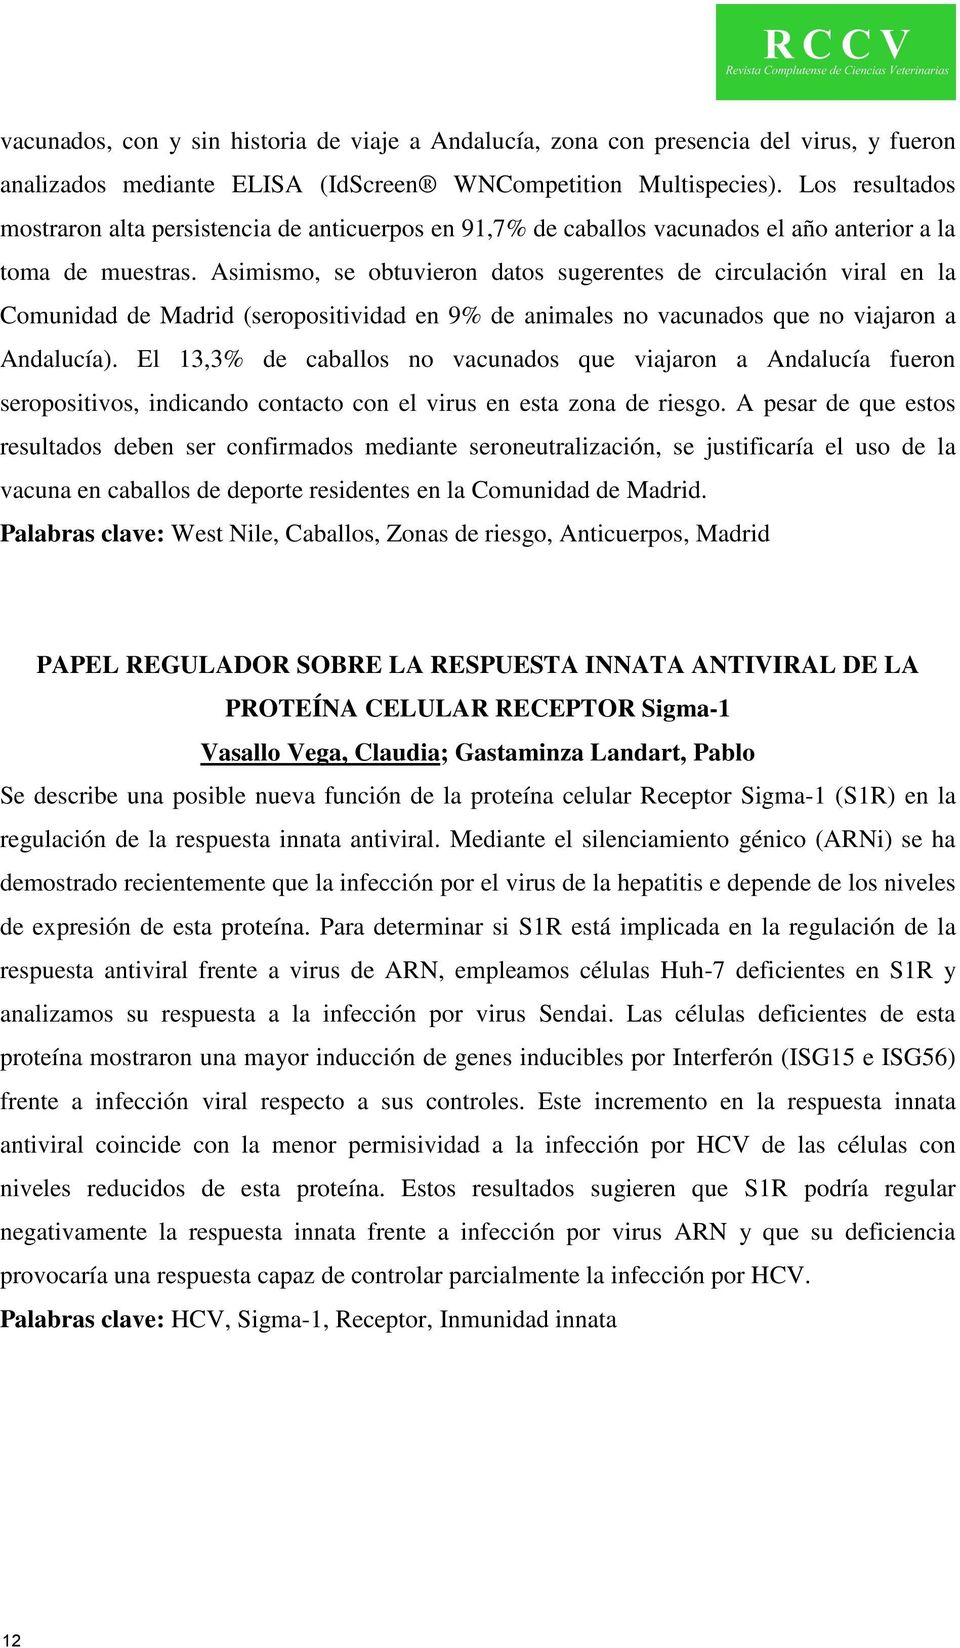 Asimismo, se obtuvieron datos sugerentes de circulación viral en la Comunidad de Madrid (seropositividad en 9% de animales no vacunados que no viajaron a Andalucía).